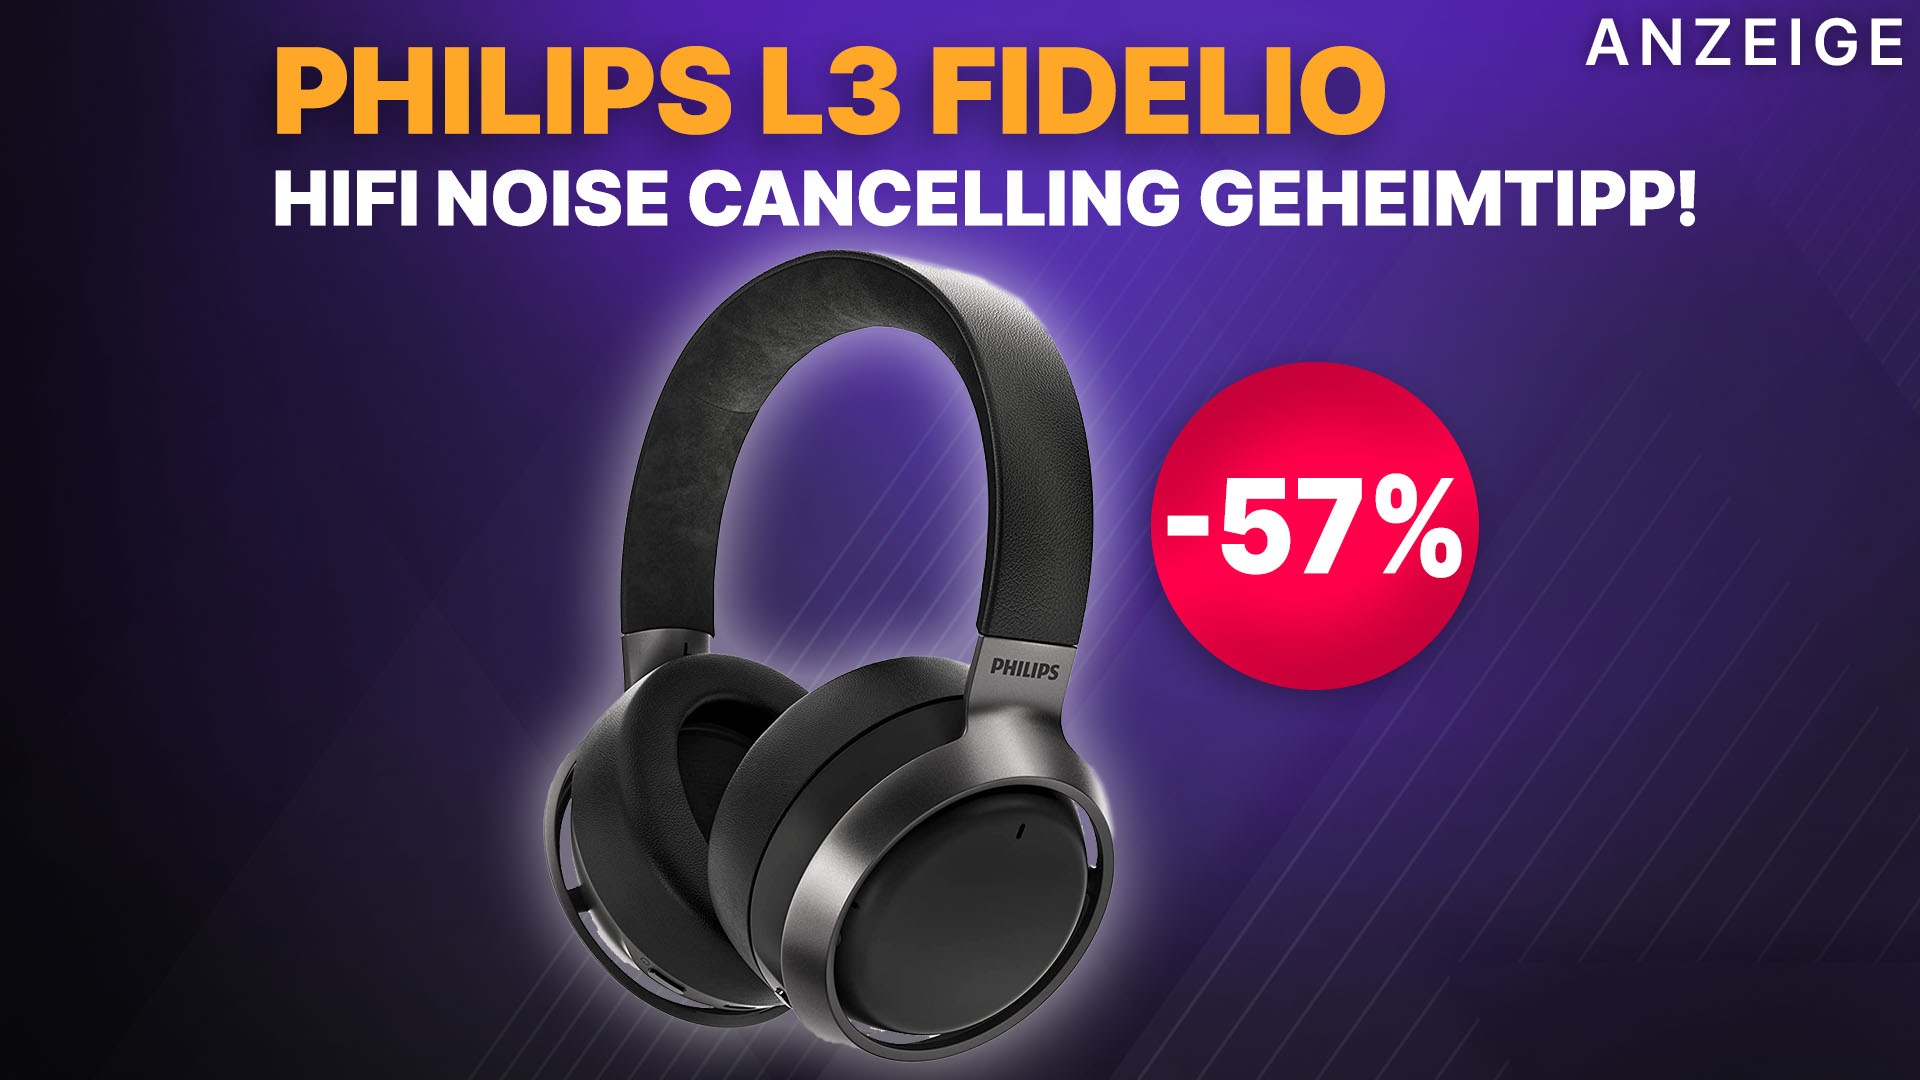 Geheimtipp Headset krass Amazon bei Philips Cancelling Noise jetzt ANC HiFi halben Preis! L3 zum reduziert Kopfhörer Fidelio